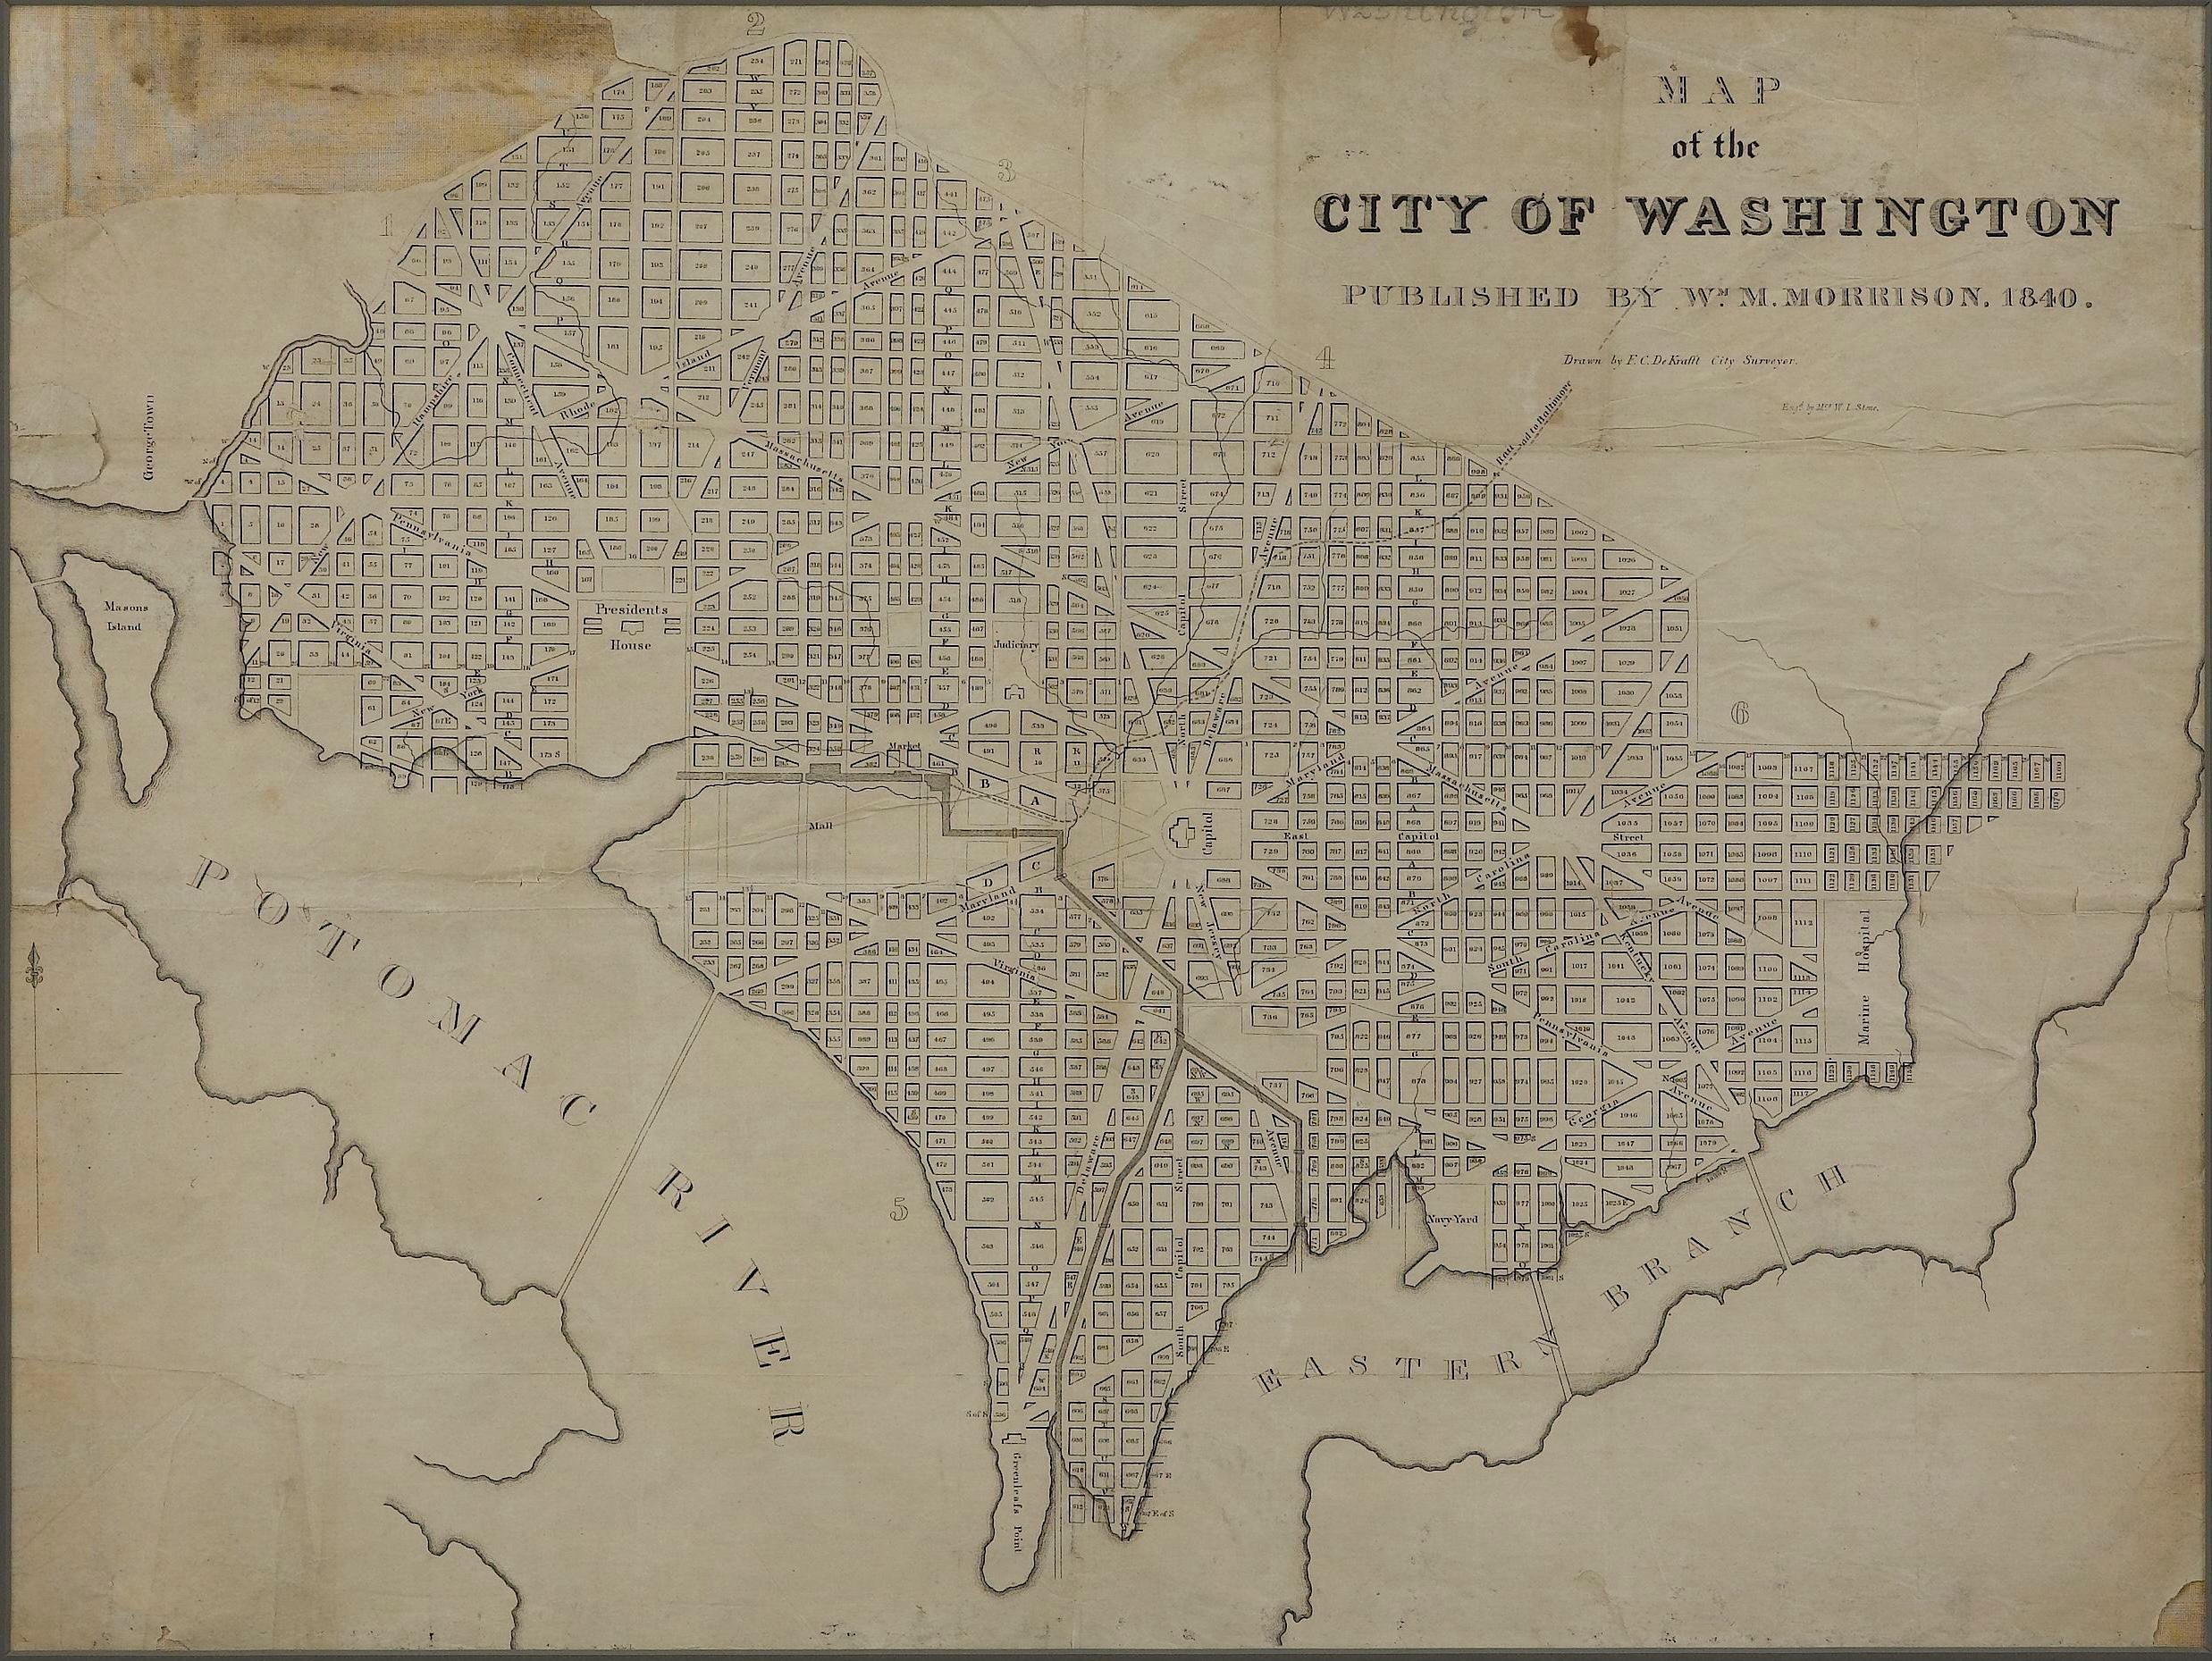 Map of the City of Washington aus dem Jahr 1840, herausgegeben von William M. Morrison (Federal) im Angebot